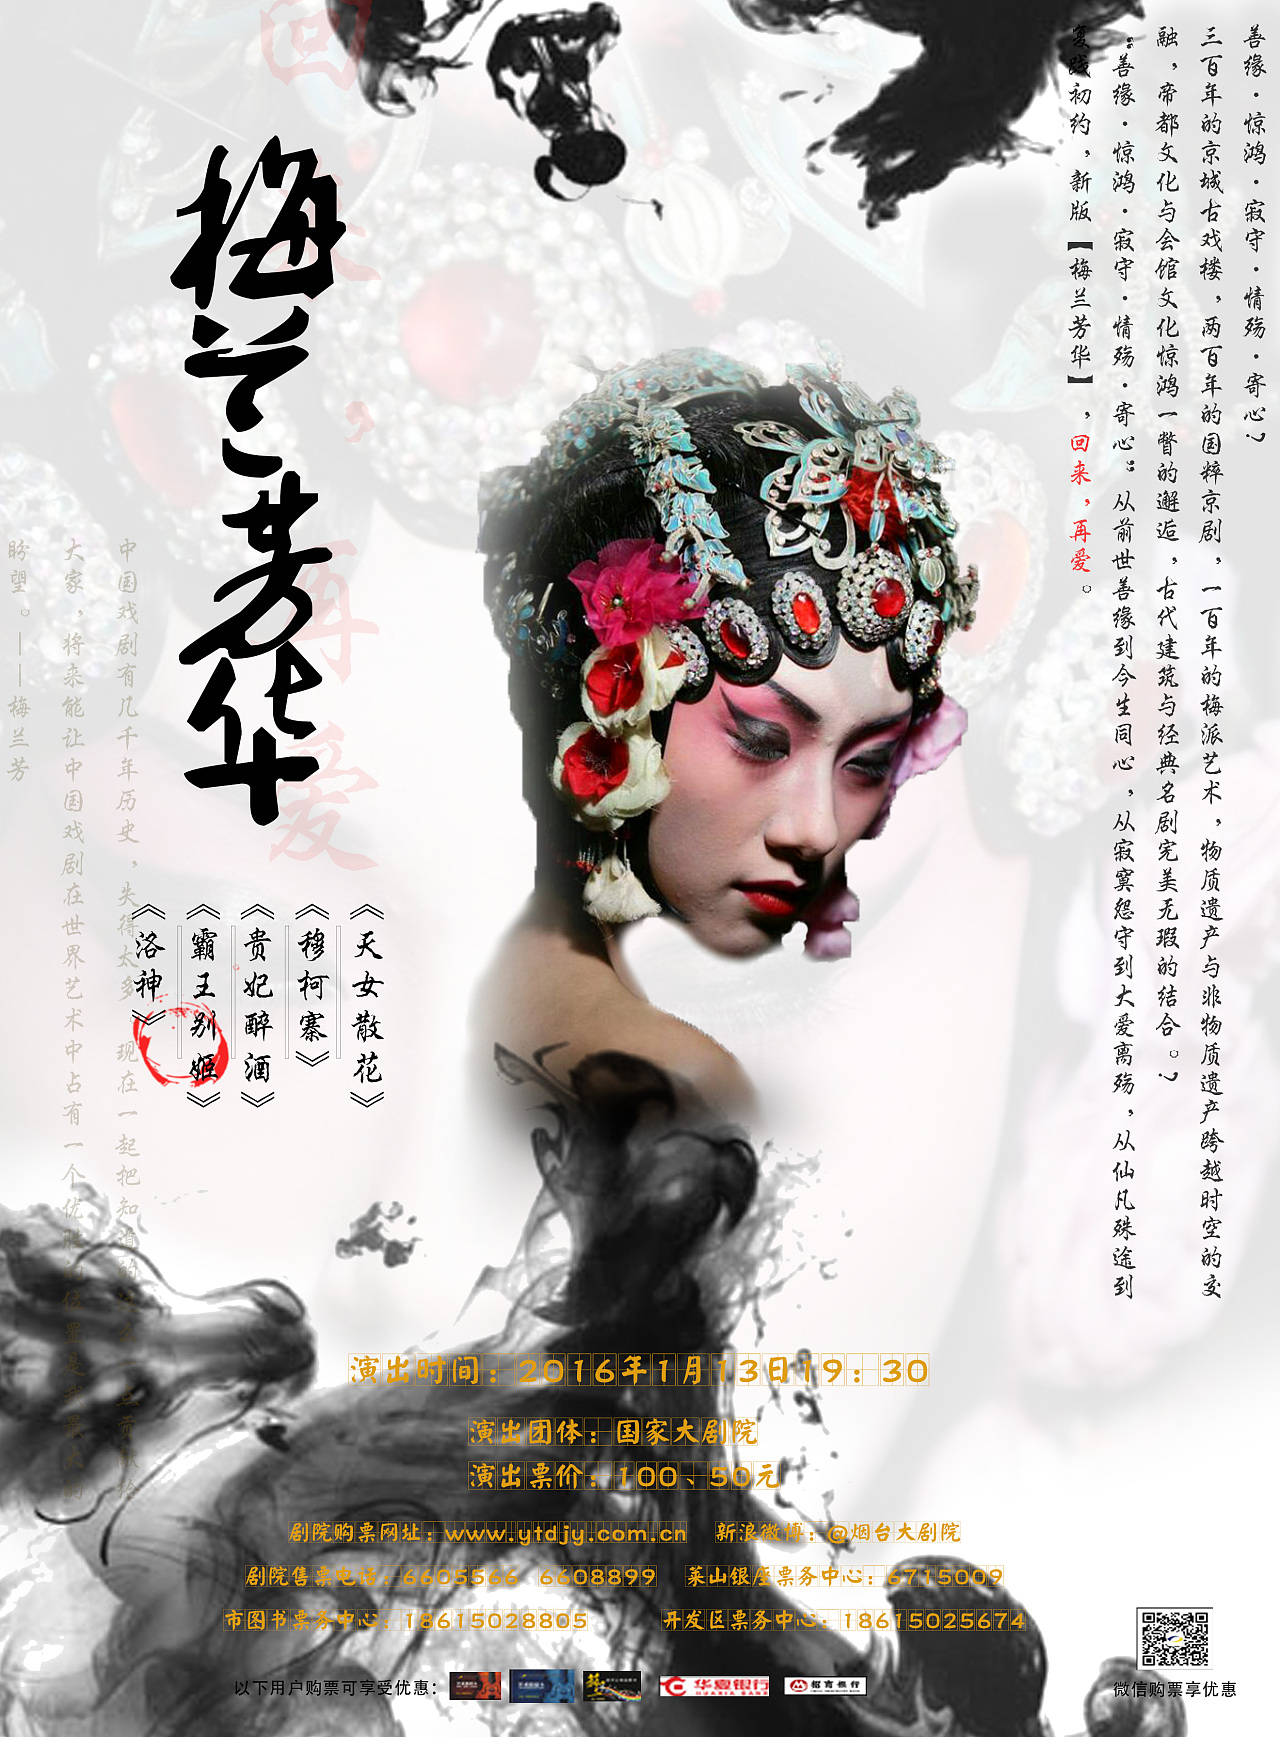 为纪念中国京剧表演艺术大师梅兰芳先生而设计的海报上海